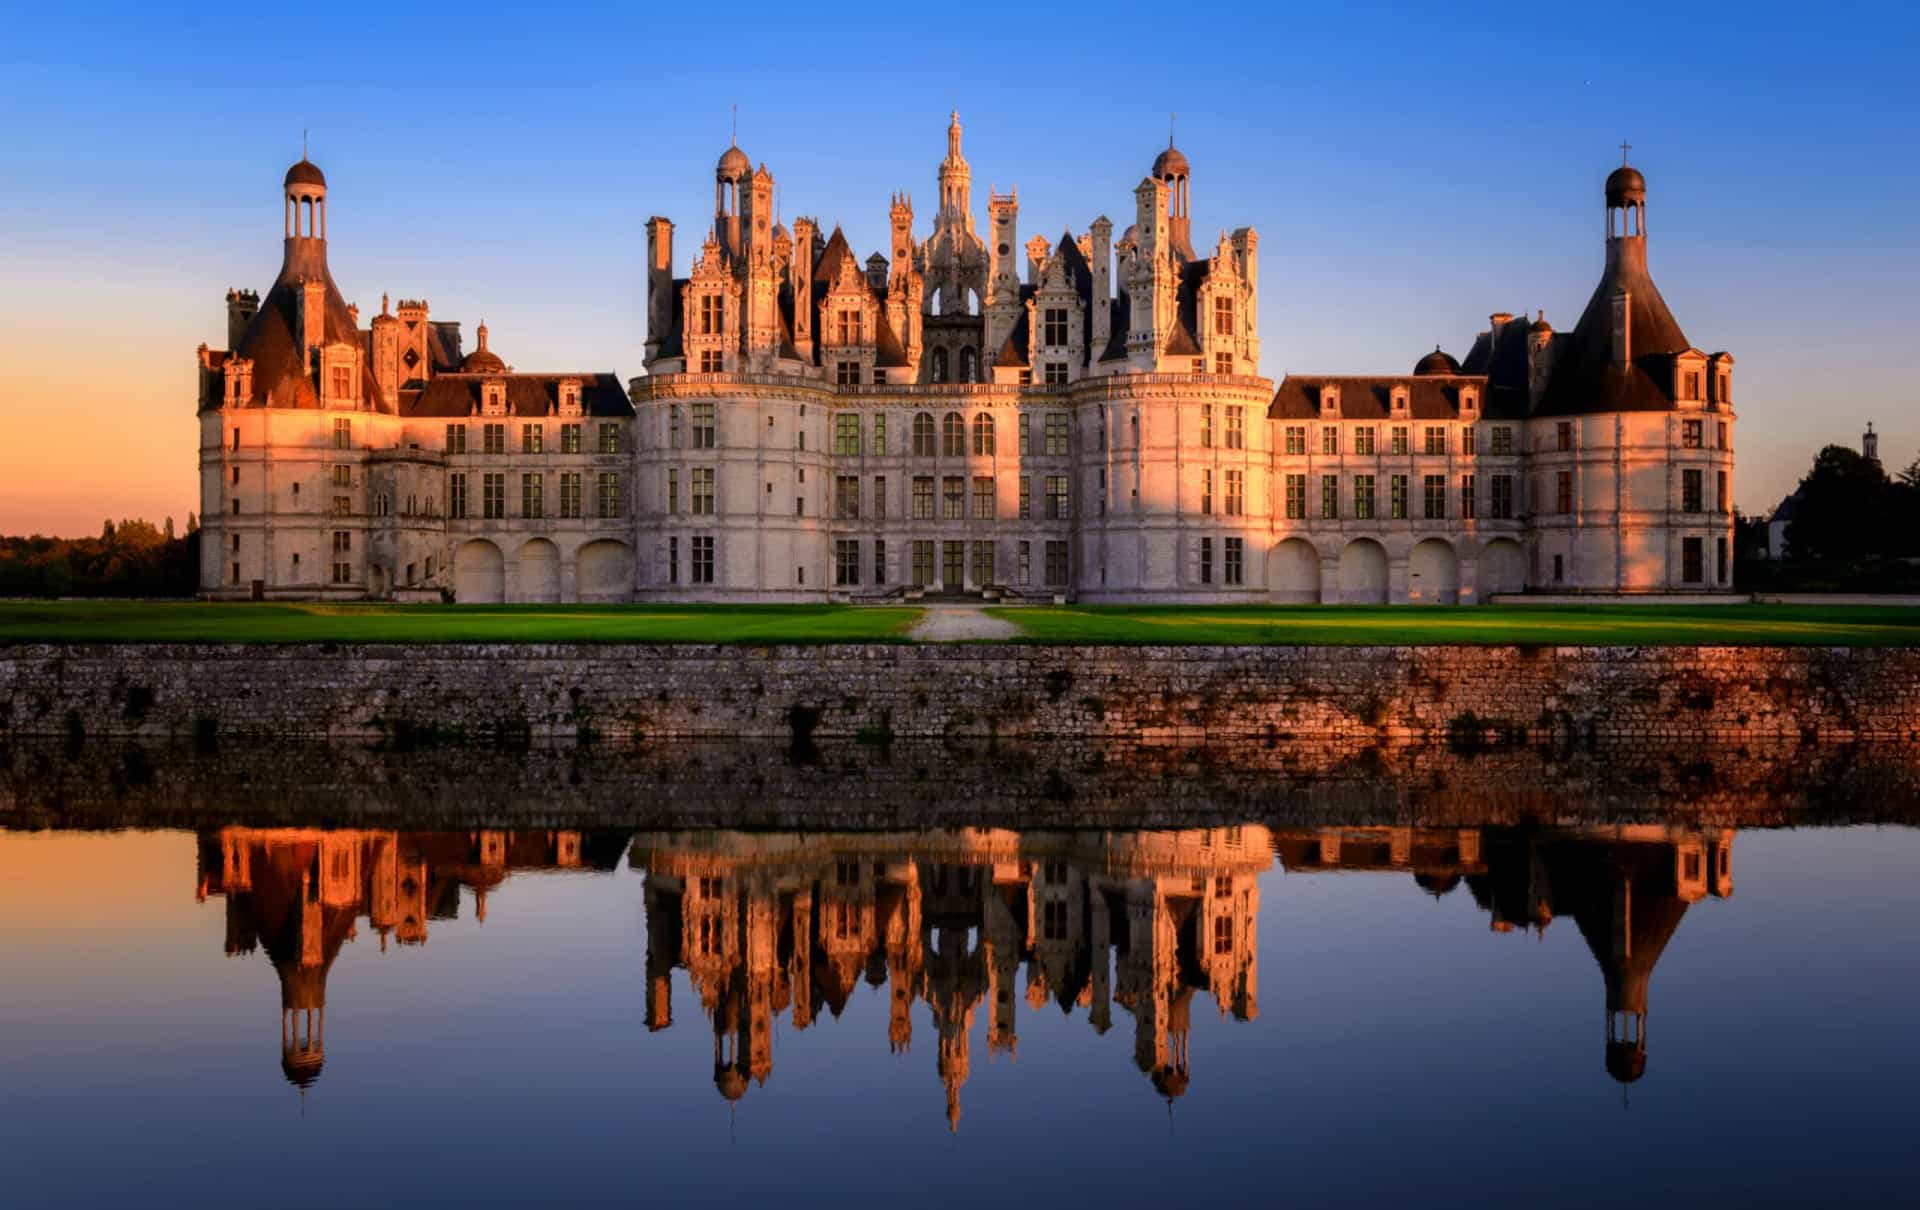 <p>Le château de Chambord est l'un des plus reconnaissable de France, de part son <a href="https://www.starsinsider.com/fr/lifestyle/418689/le-style-haussmannien-linfluence-mondiale-de-larchitecture-parisienne">architecture</a> typique de la Renaissance française. C'est le plus grand château de la vallée de la Loire, datant de 1547. </p>